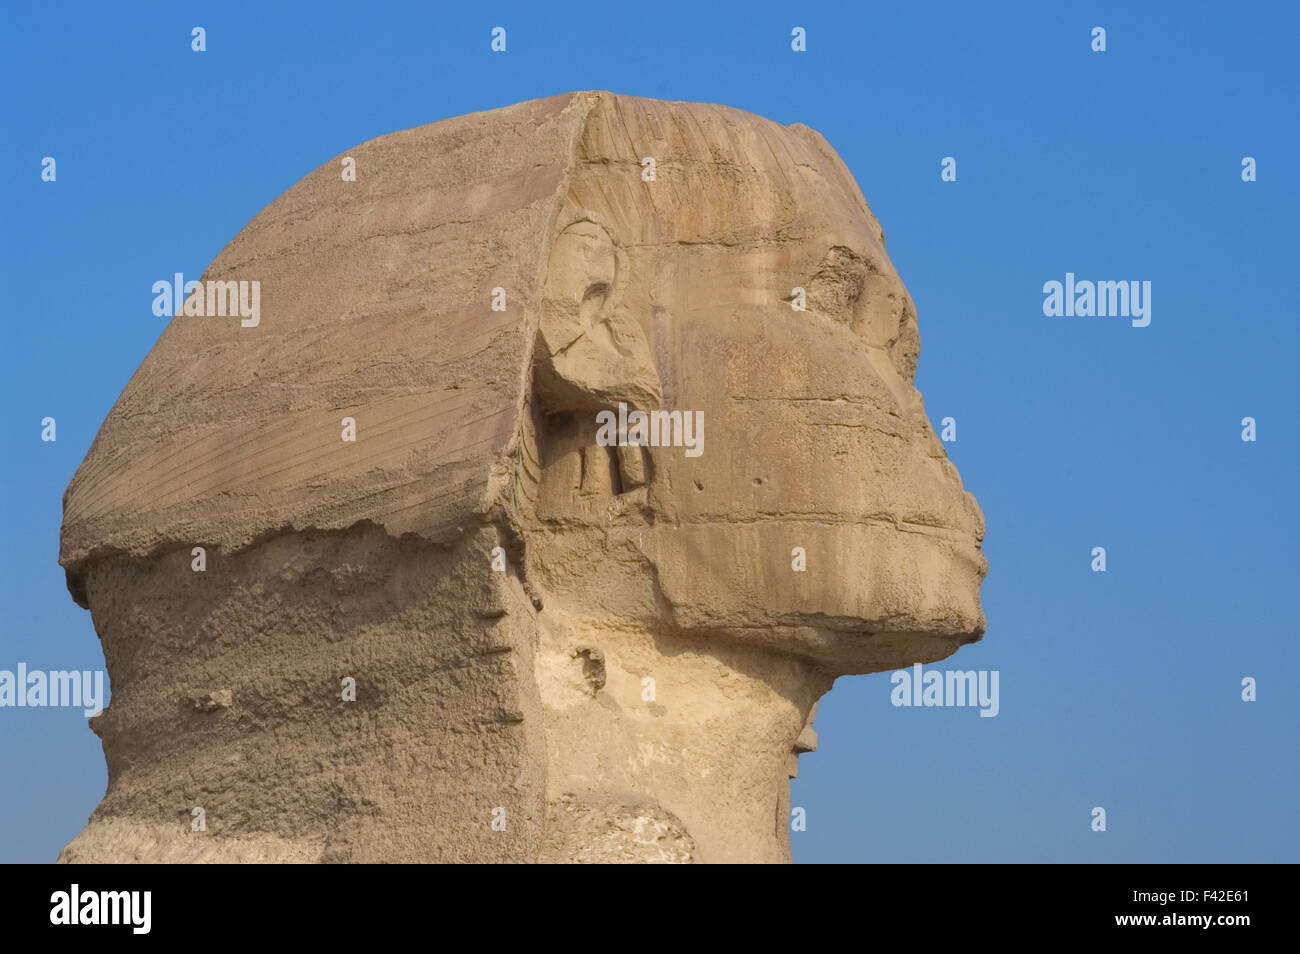 L'Égypte. Grand Sphinx de Gizeh. Statue en pierre calcaire avec corps de lion et tête humaine. Est d'avis que représente le pharaon Khafra. Construit comme une garde de protection sur les berges du Nil. Vieux Royaume. 2500 av. J.-C. environ. 4ème dynastie. Banque D'Images